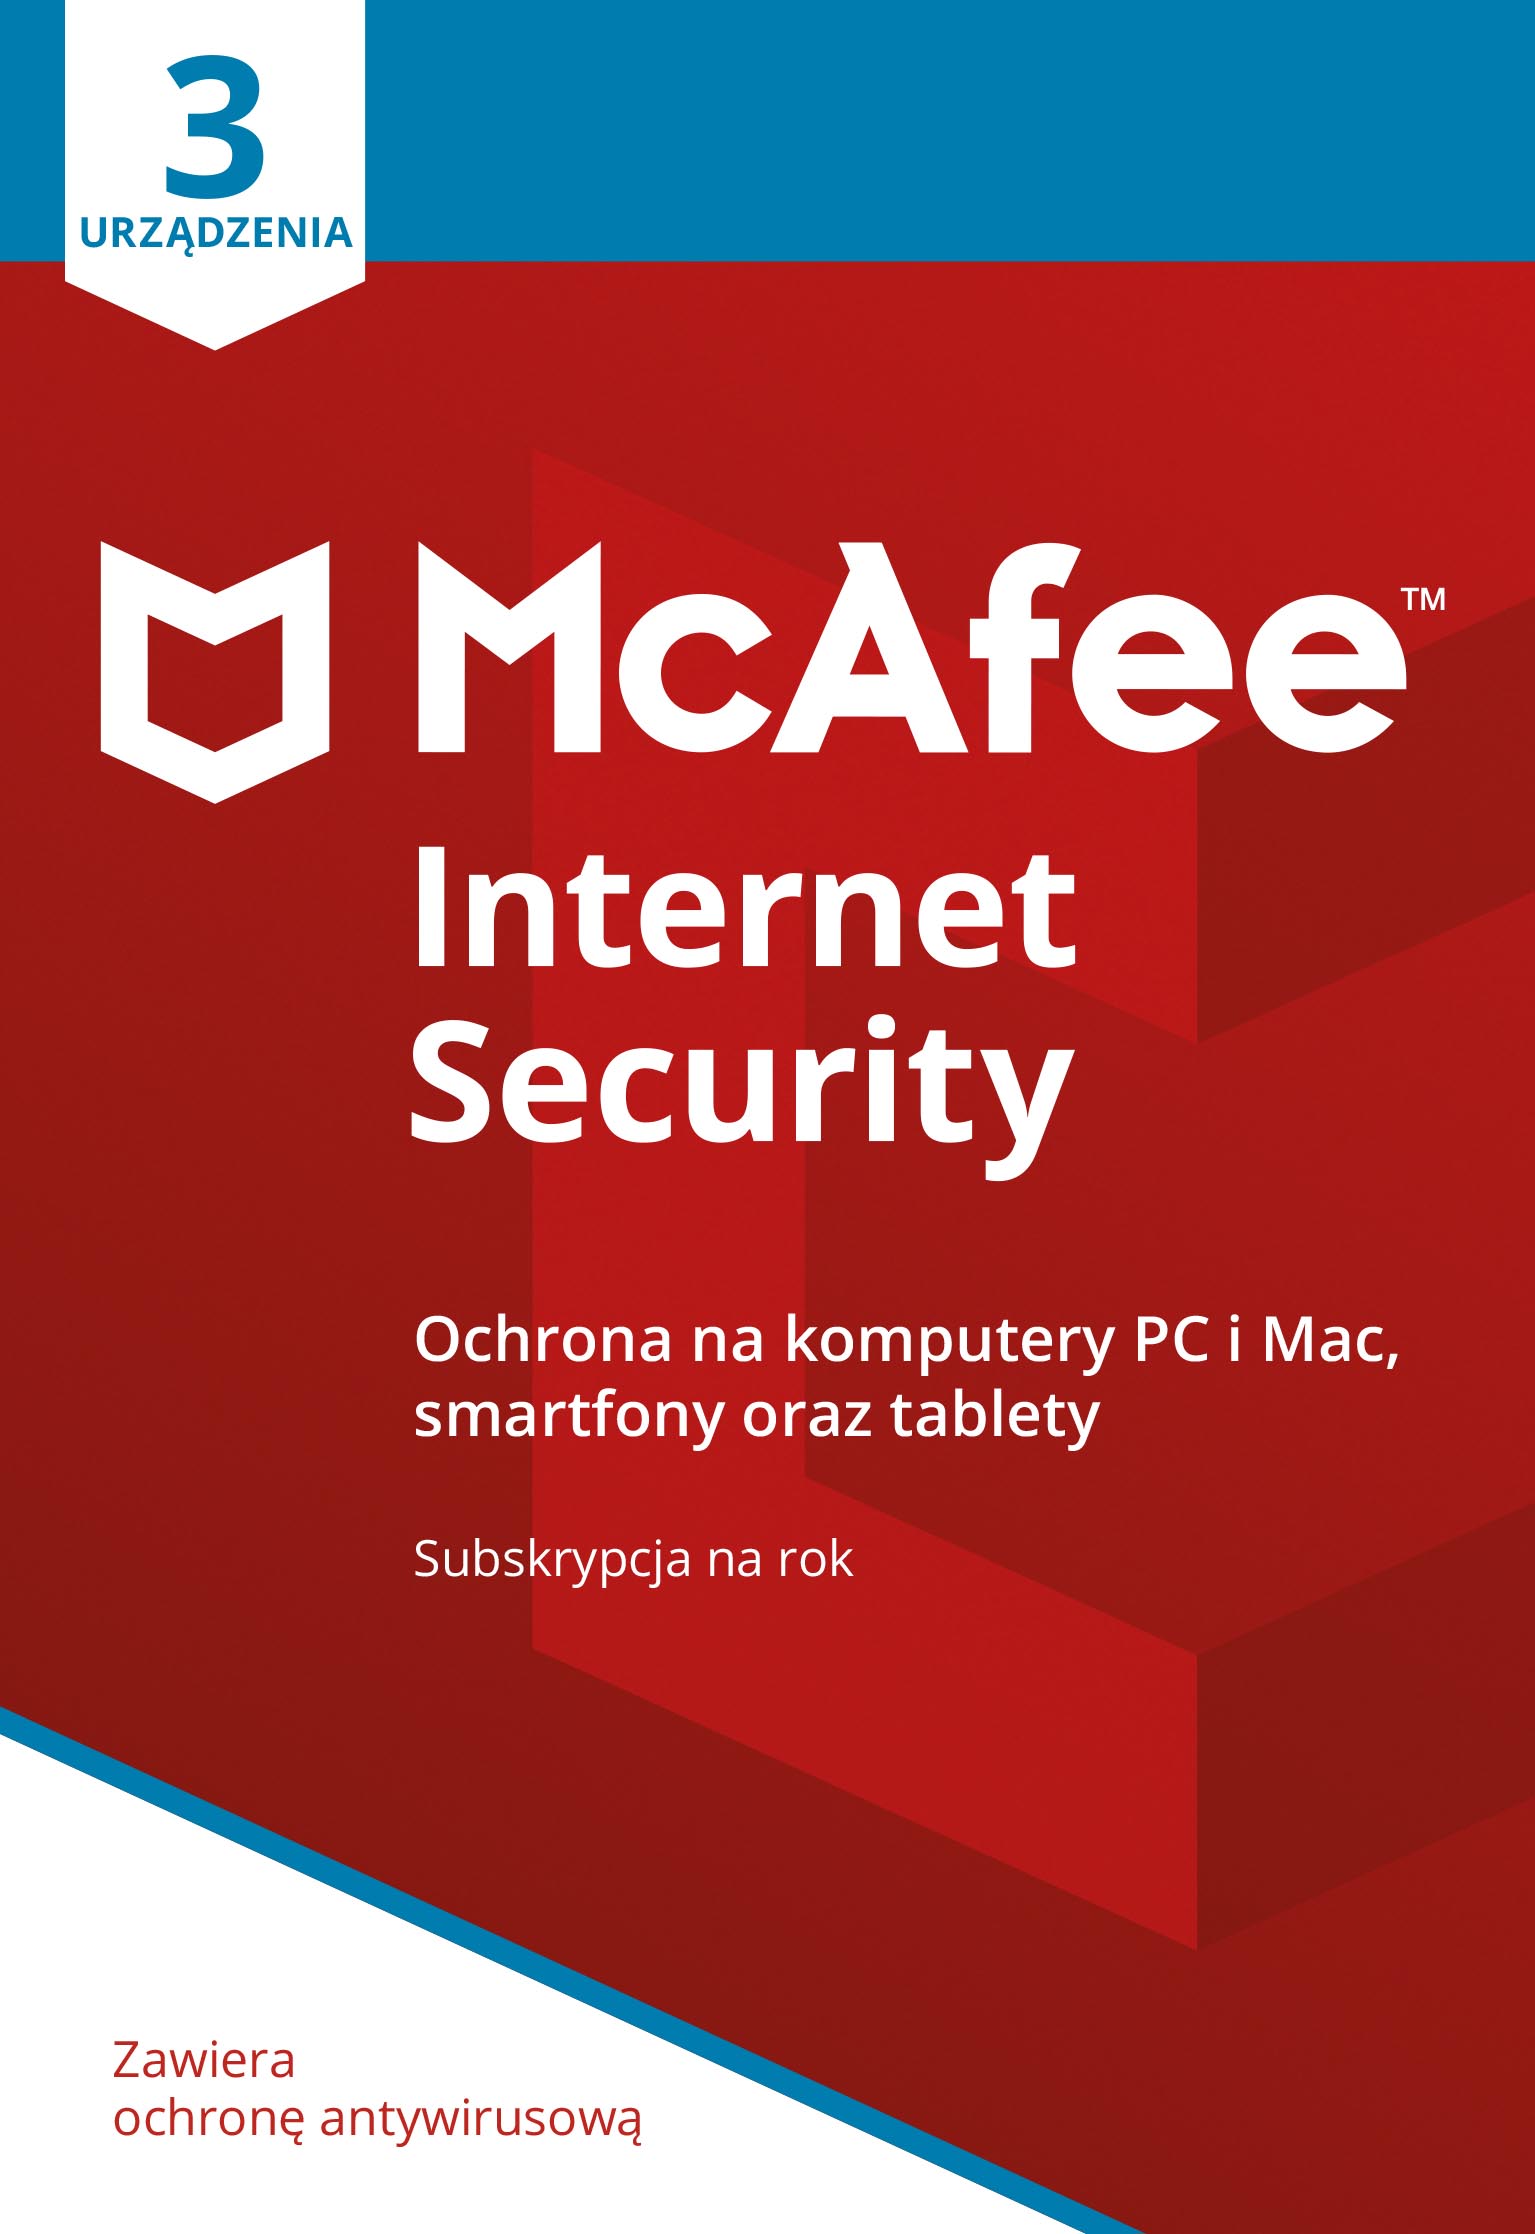 Program Antywirusowy McAfee Internet Security (3 urządzenia)